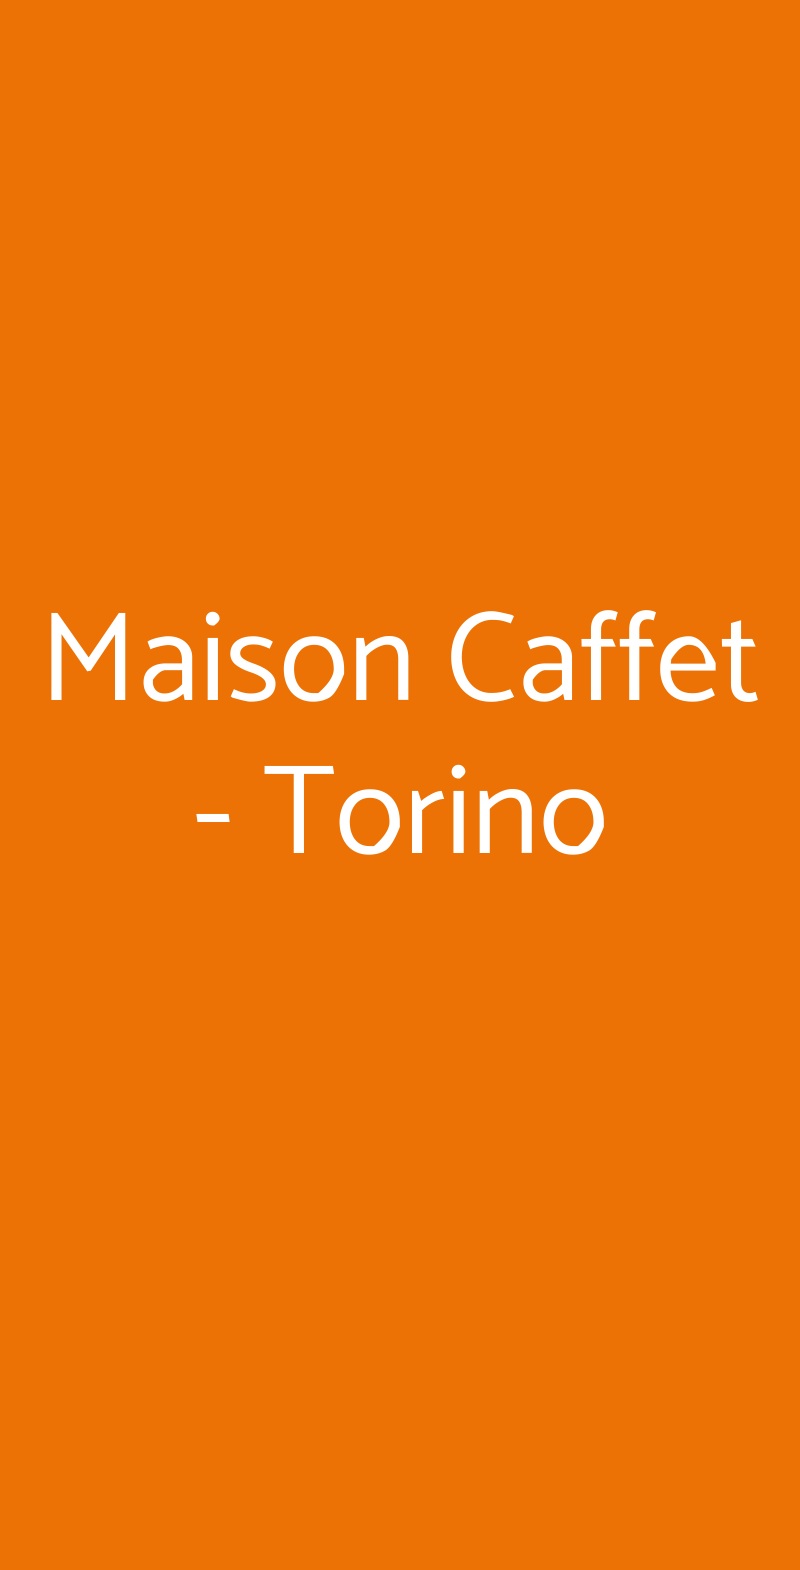 Maison Caffet - Torino Torino menù 1 pagina